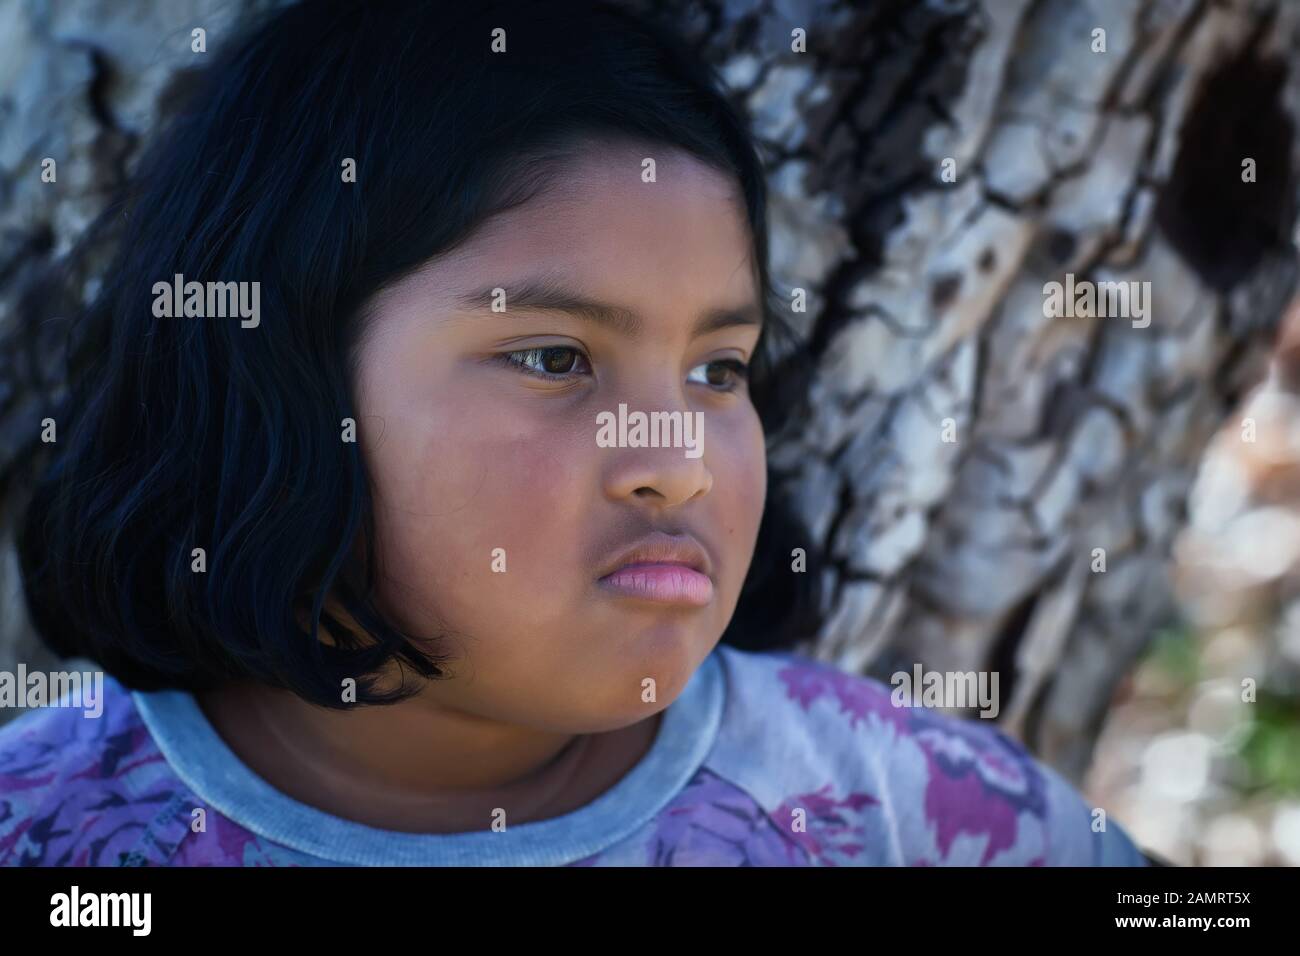 Una niña con una expresión facial molesta de pie delante de un árbol. Foto de stock